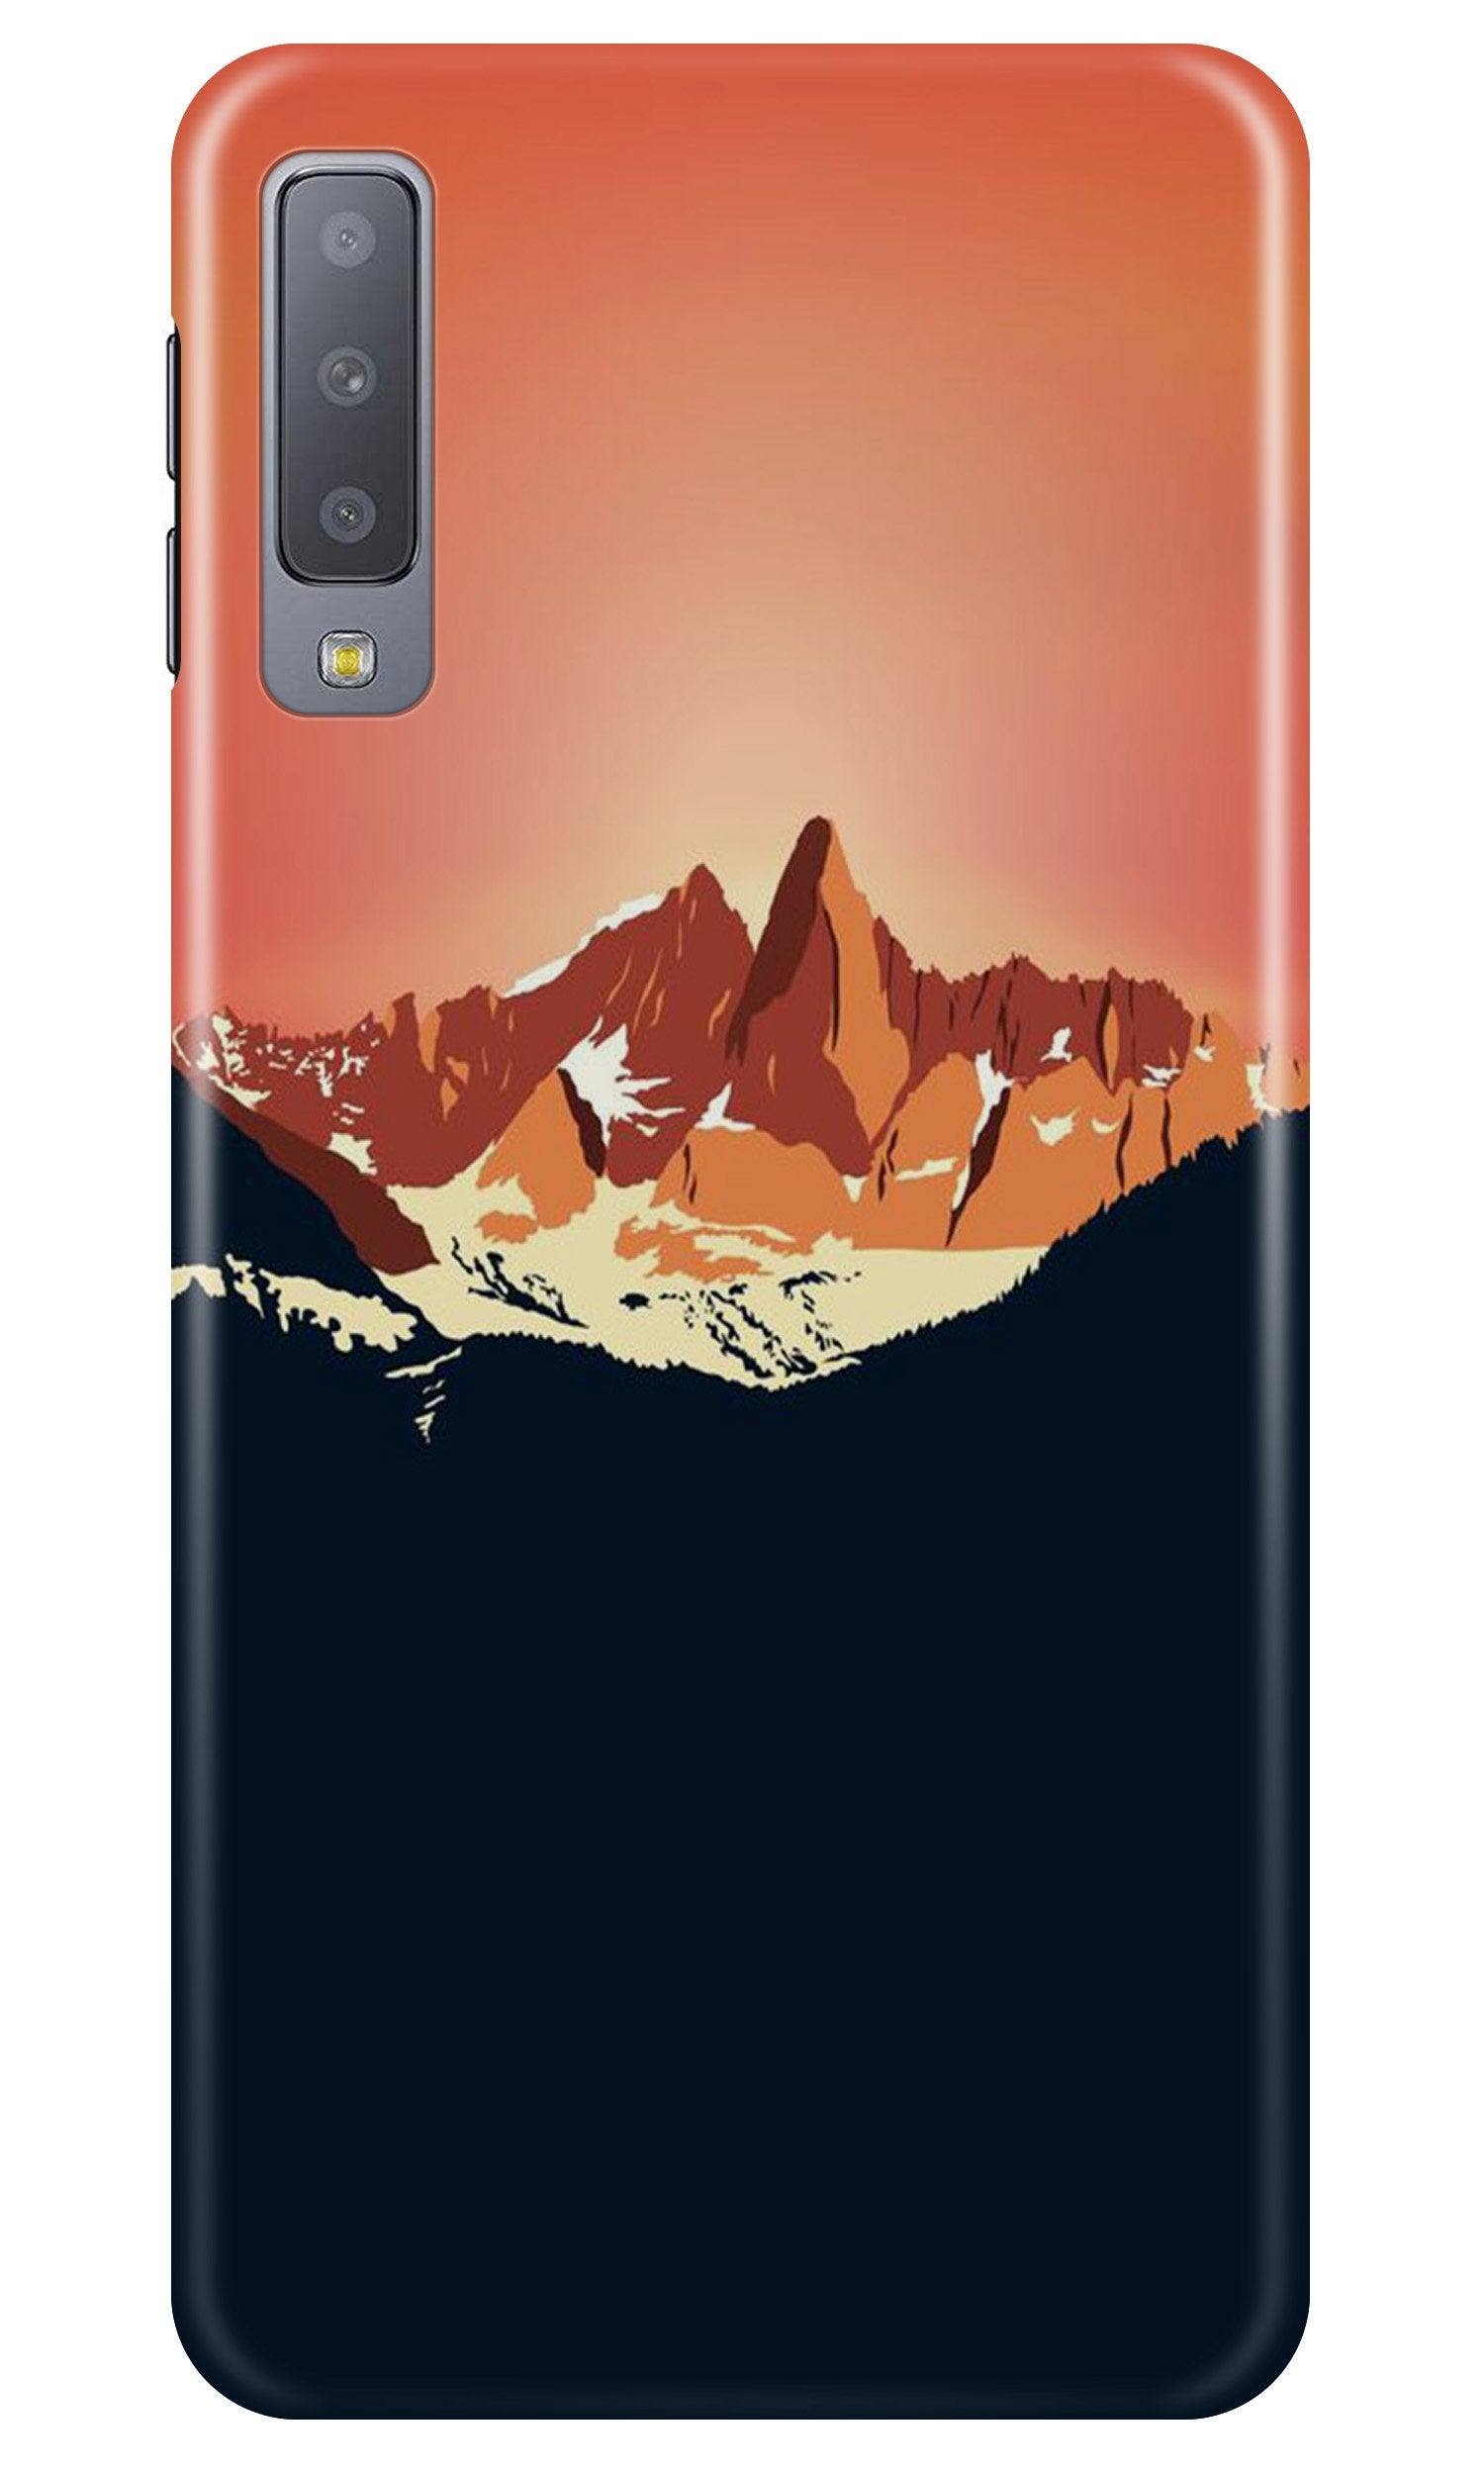 Mountains Case for Samung Galaxy A70s (Design No. 227)